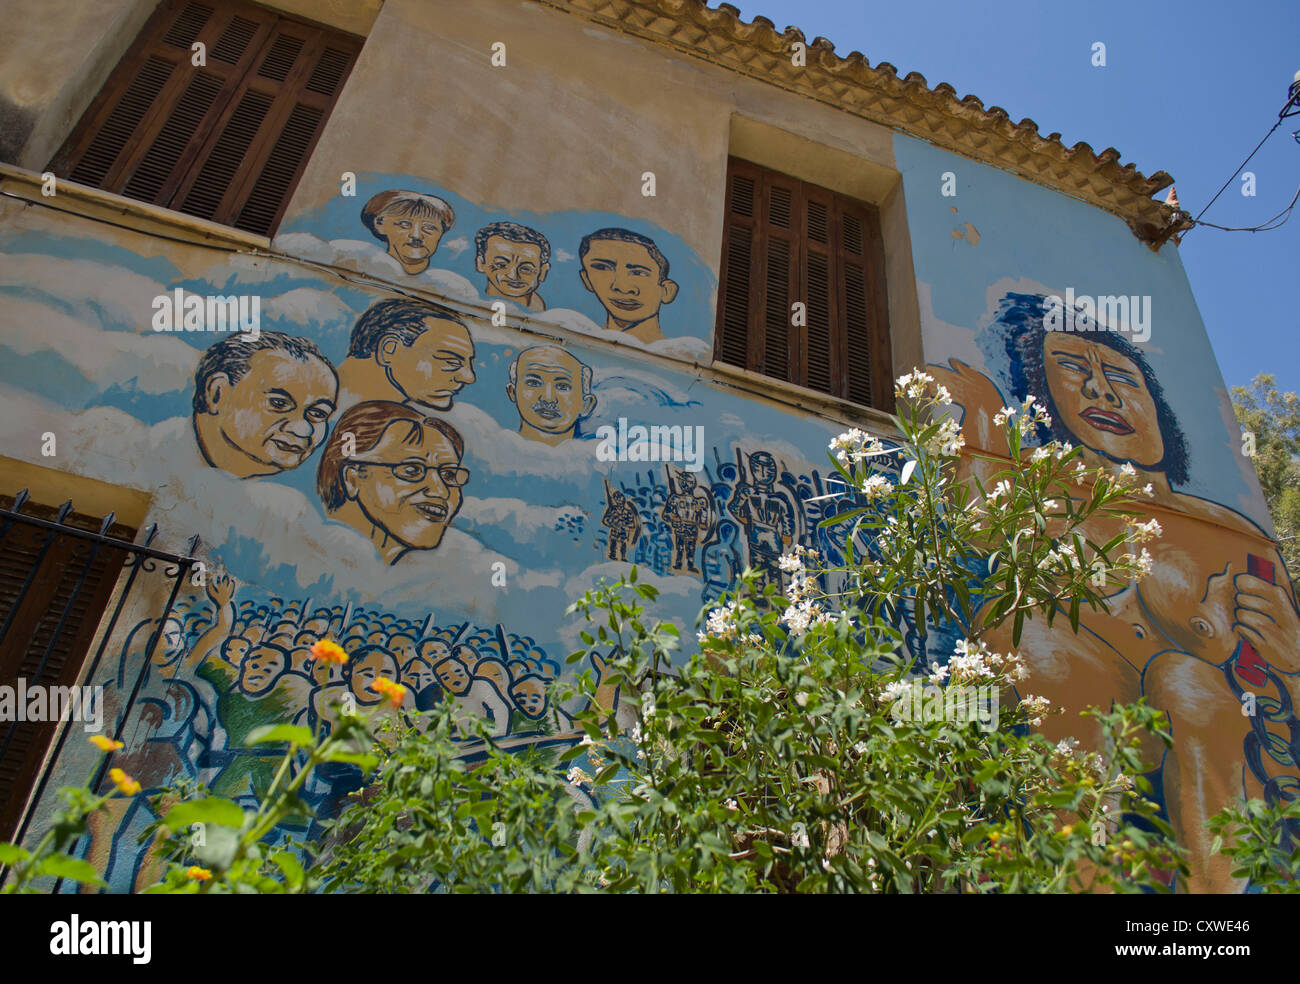 Peinture murale sur une maison représente les dirigeants politiques. Banque D'Images